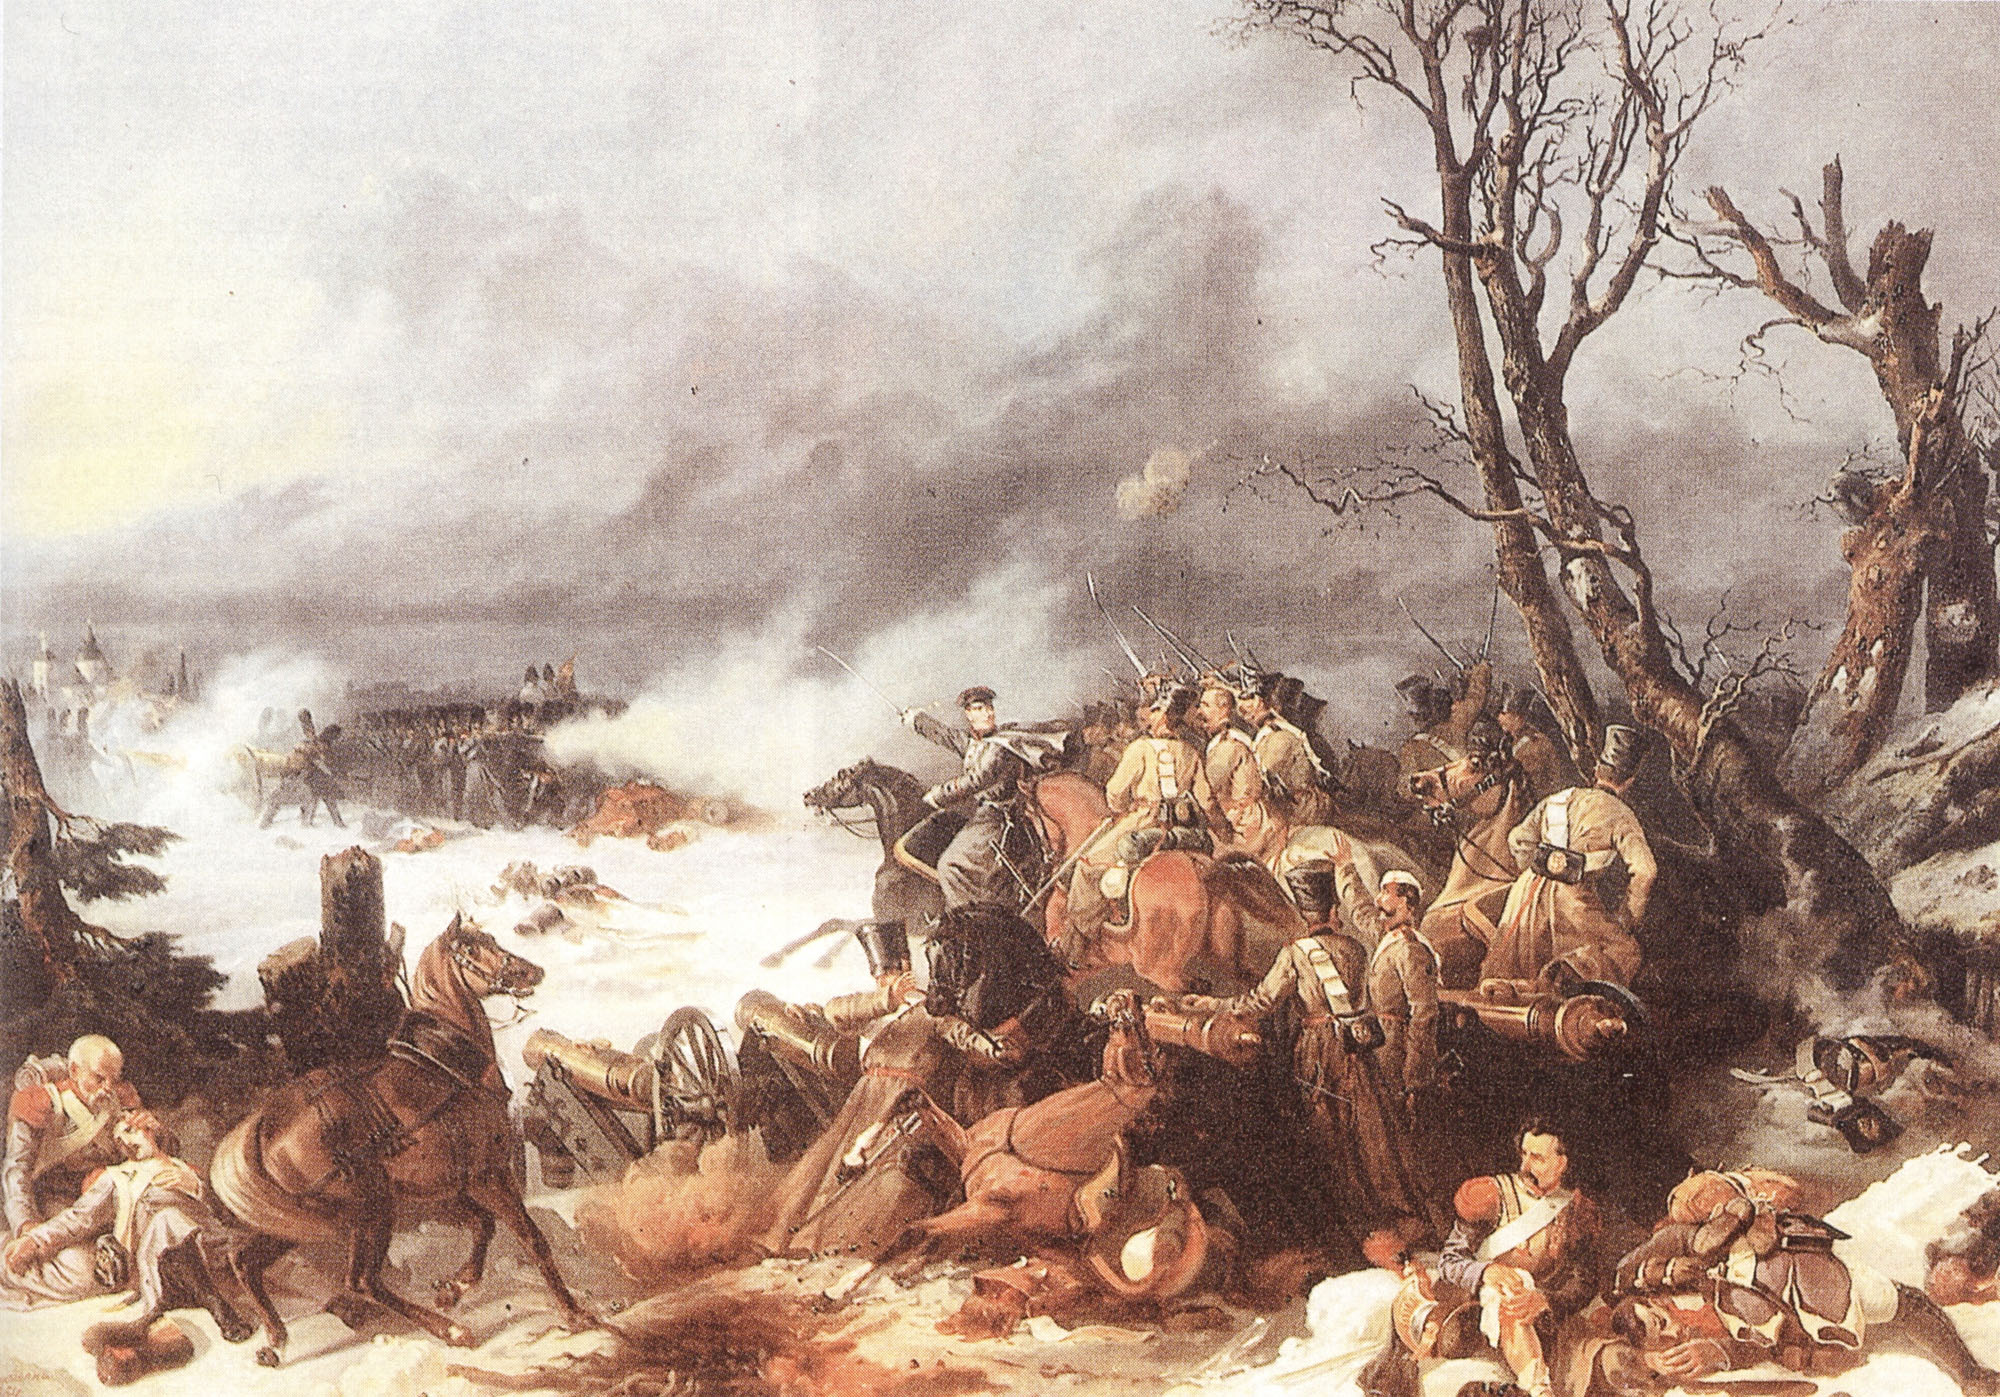 М. Микешин. "Подвиг батареи полковника Никитина в сражении под Красным". 1854.